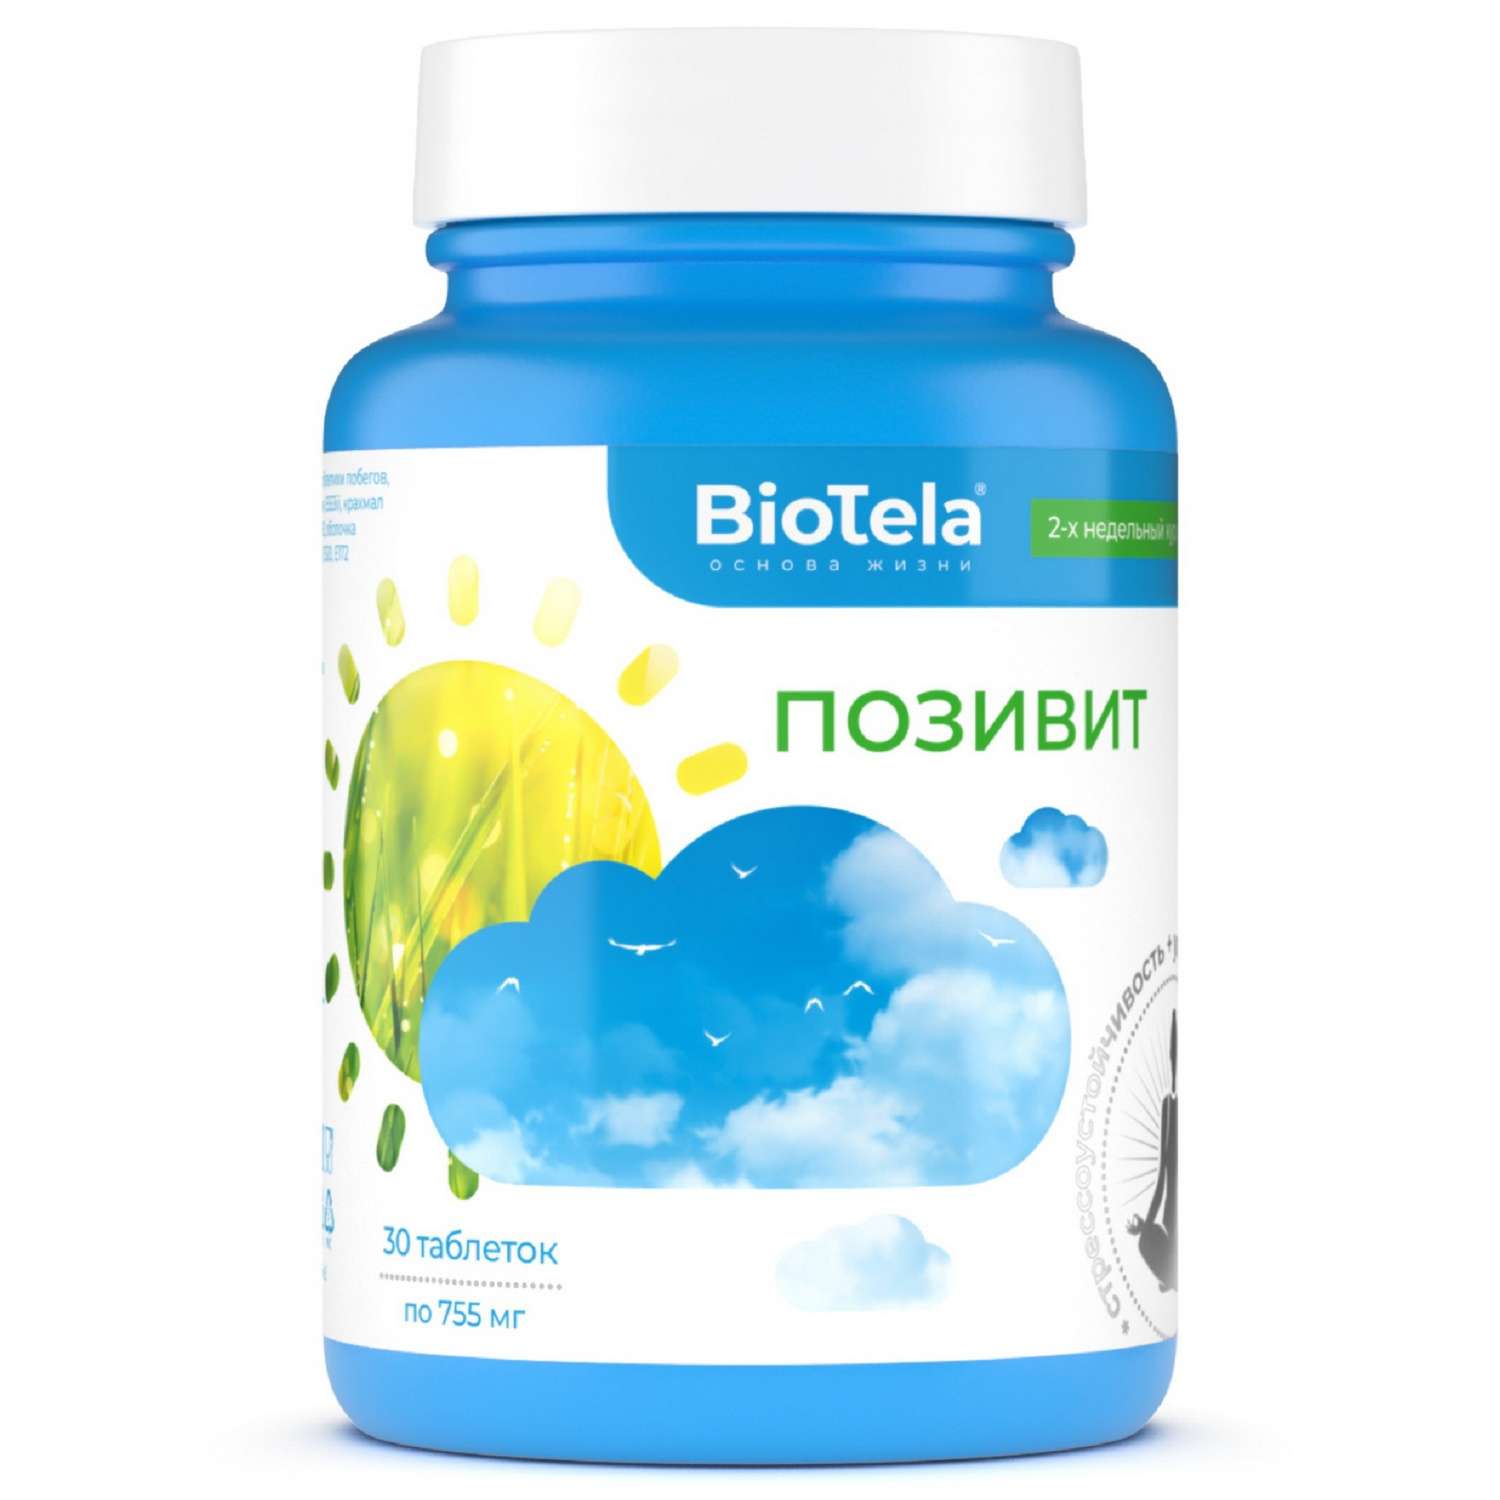 Биологически активная добавка BioTela Позивит противотревожный 30таблеток - фото 1